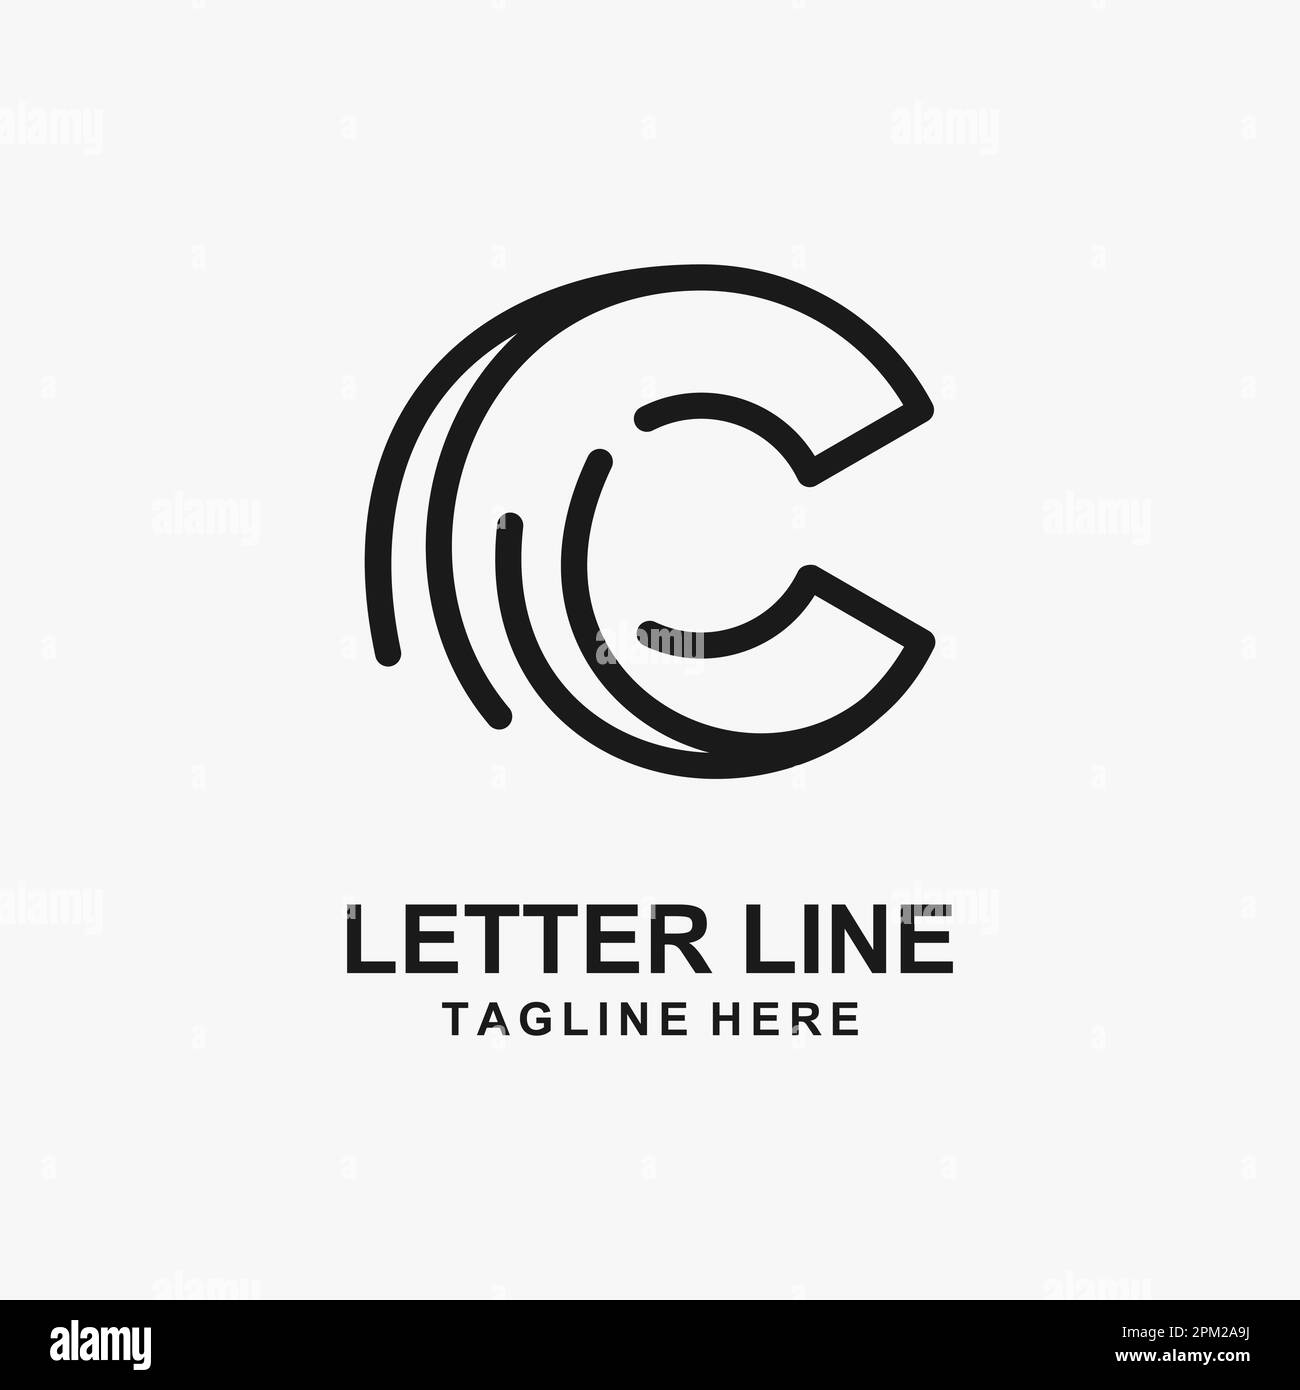 Letter C line logo design Stock Vector